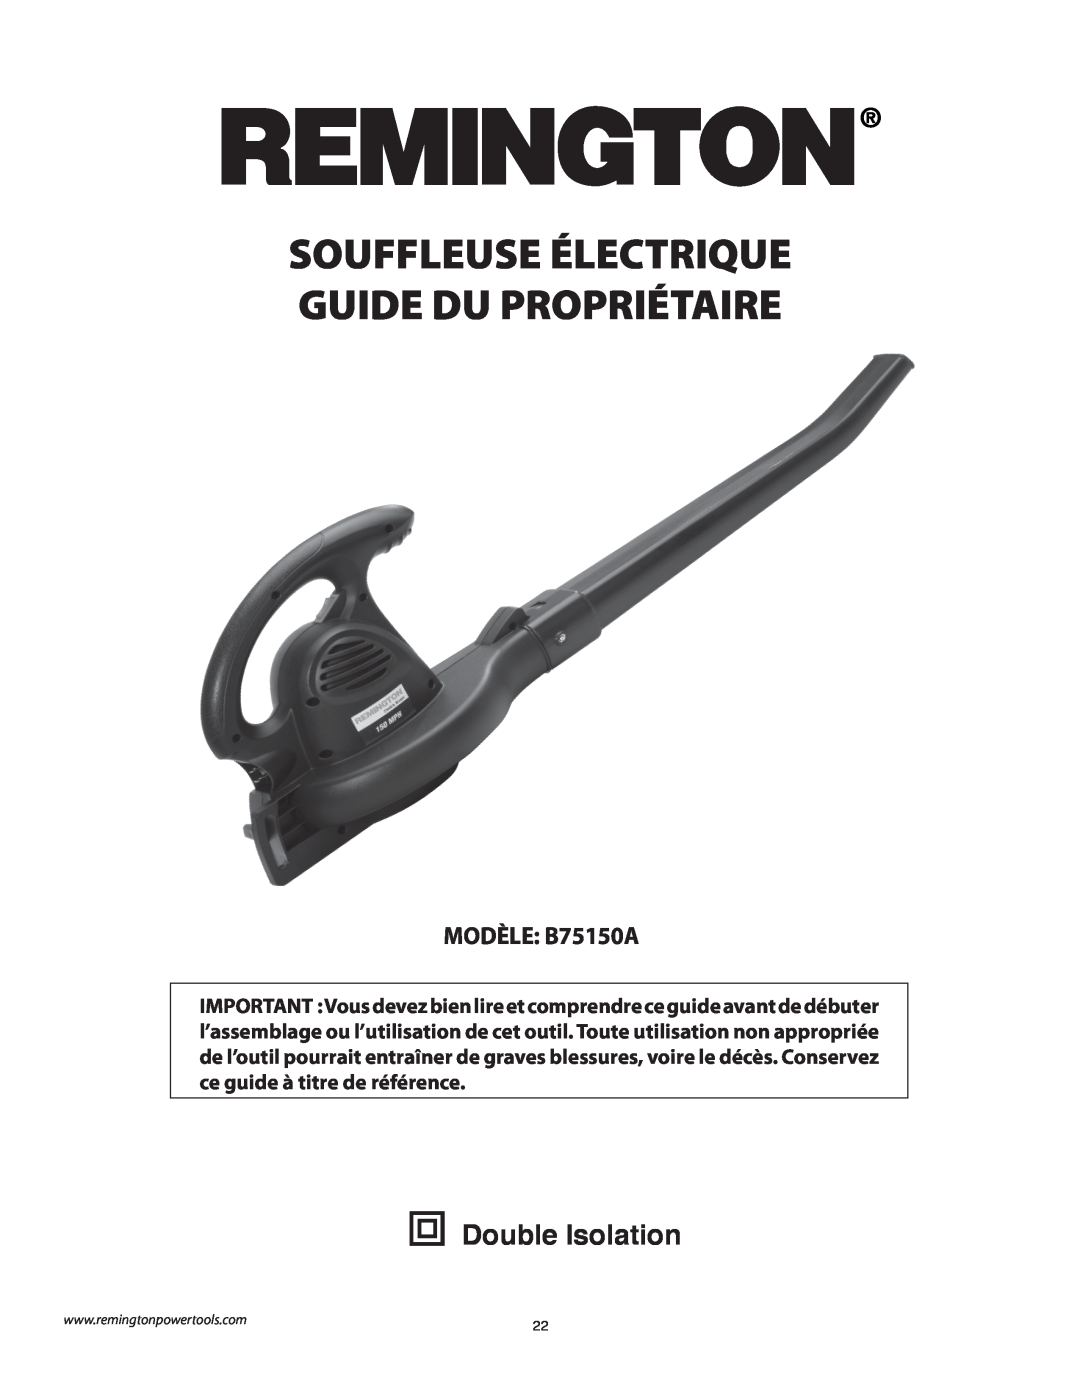 Remington owner manual Souffleuse Électrique Guide Du Propriétaire, Double Isolation, MODÈLE B75150A 